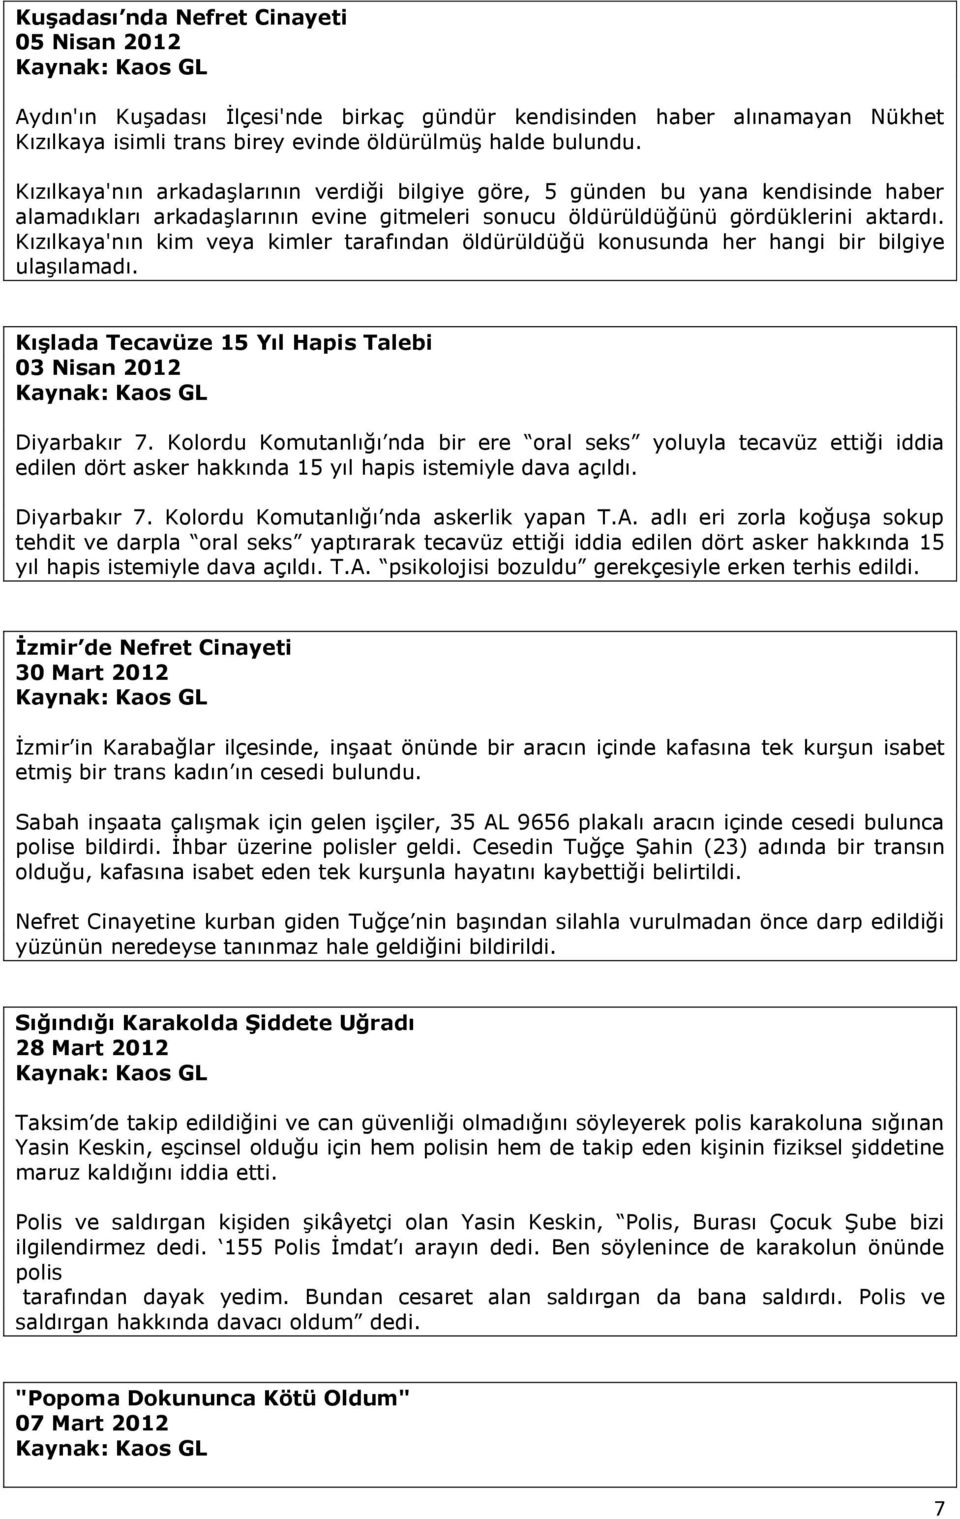 Kızılkaya'nın kim veya kimler tarafından öldürüldüğü konusunda her hangi bir bilgiye ulaşılamadı. Kışlada Tecavüze 15 Yıl Hapis Talebi 03 Nisan 2012 Diyarbakır 7.